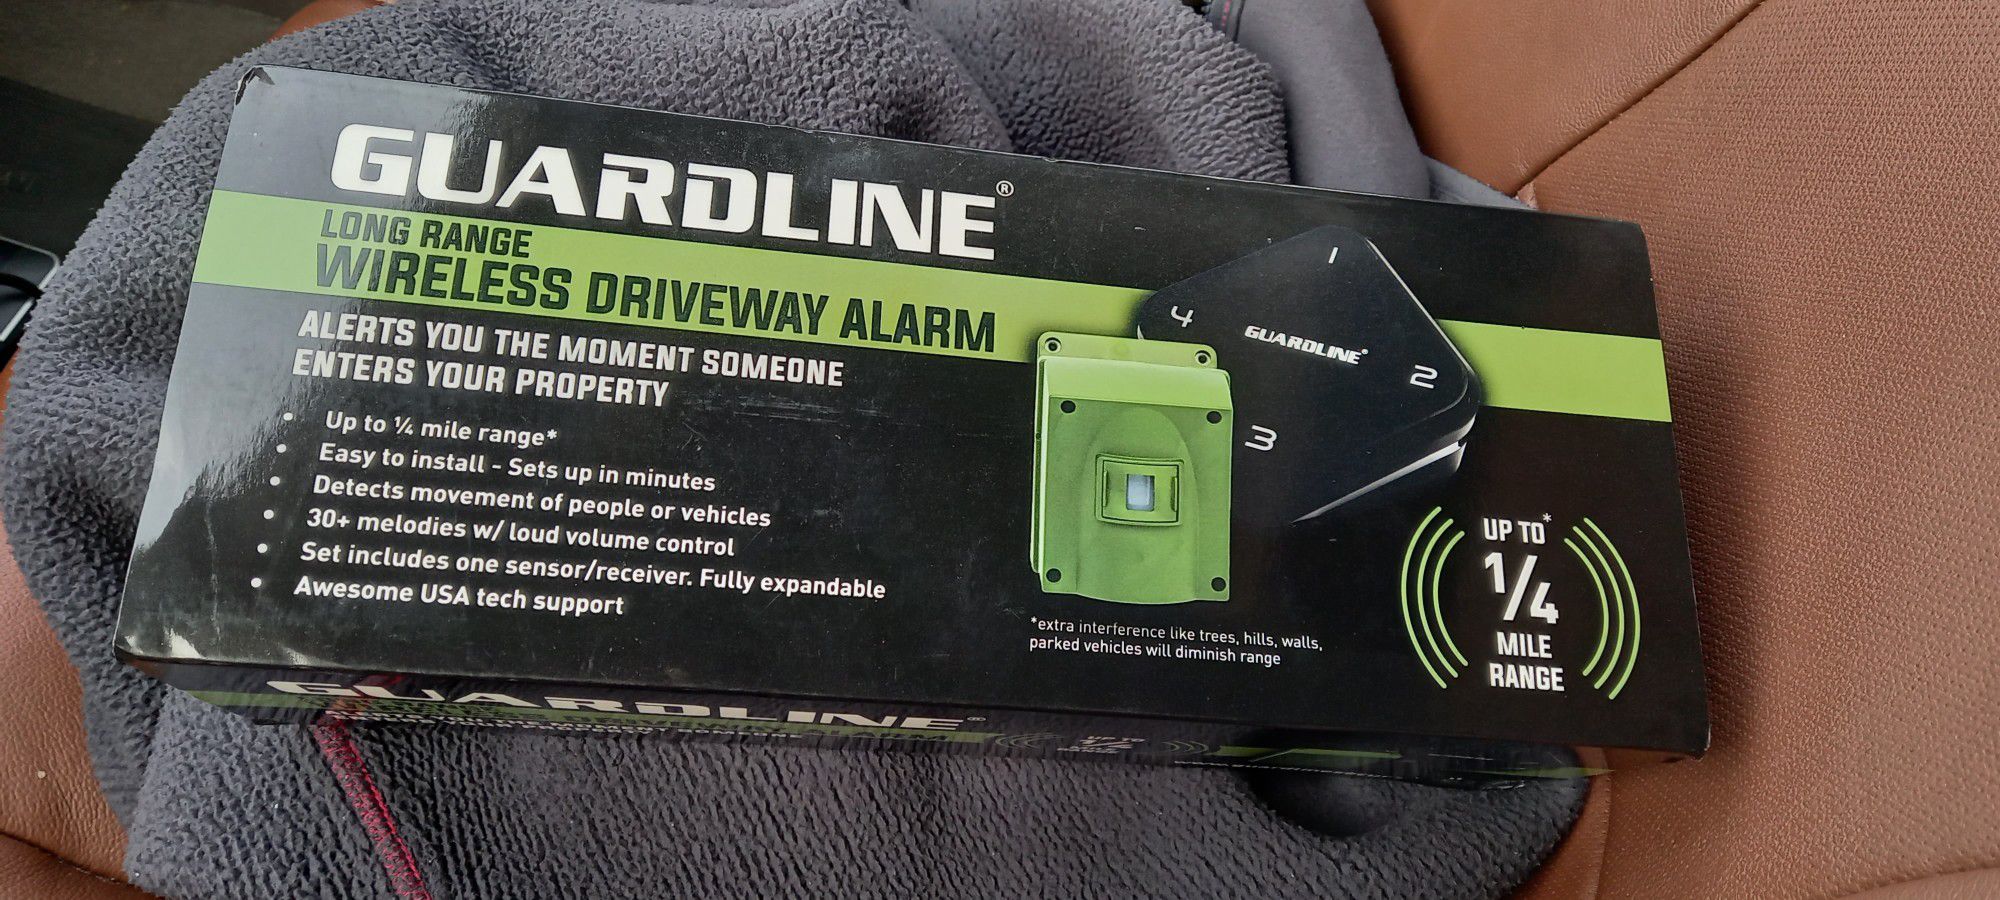 Guardline Wireless DRIVEWAY ALARM